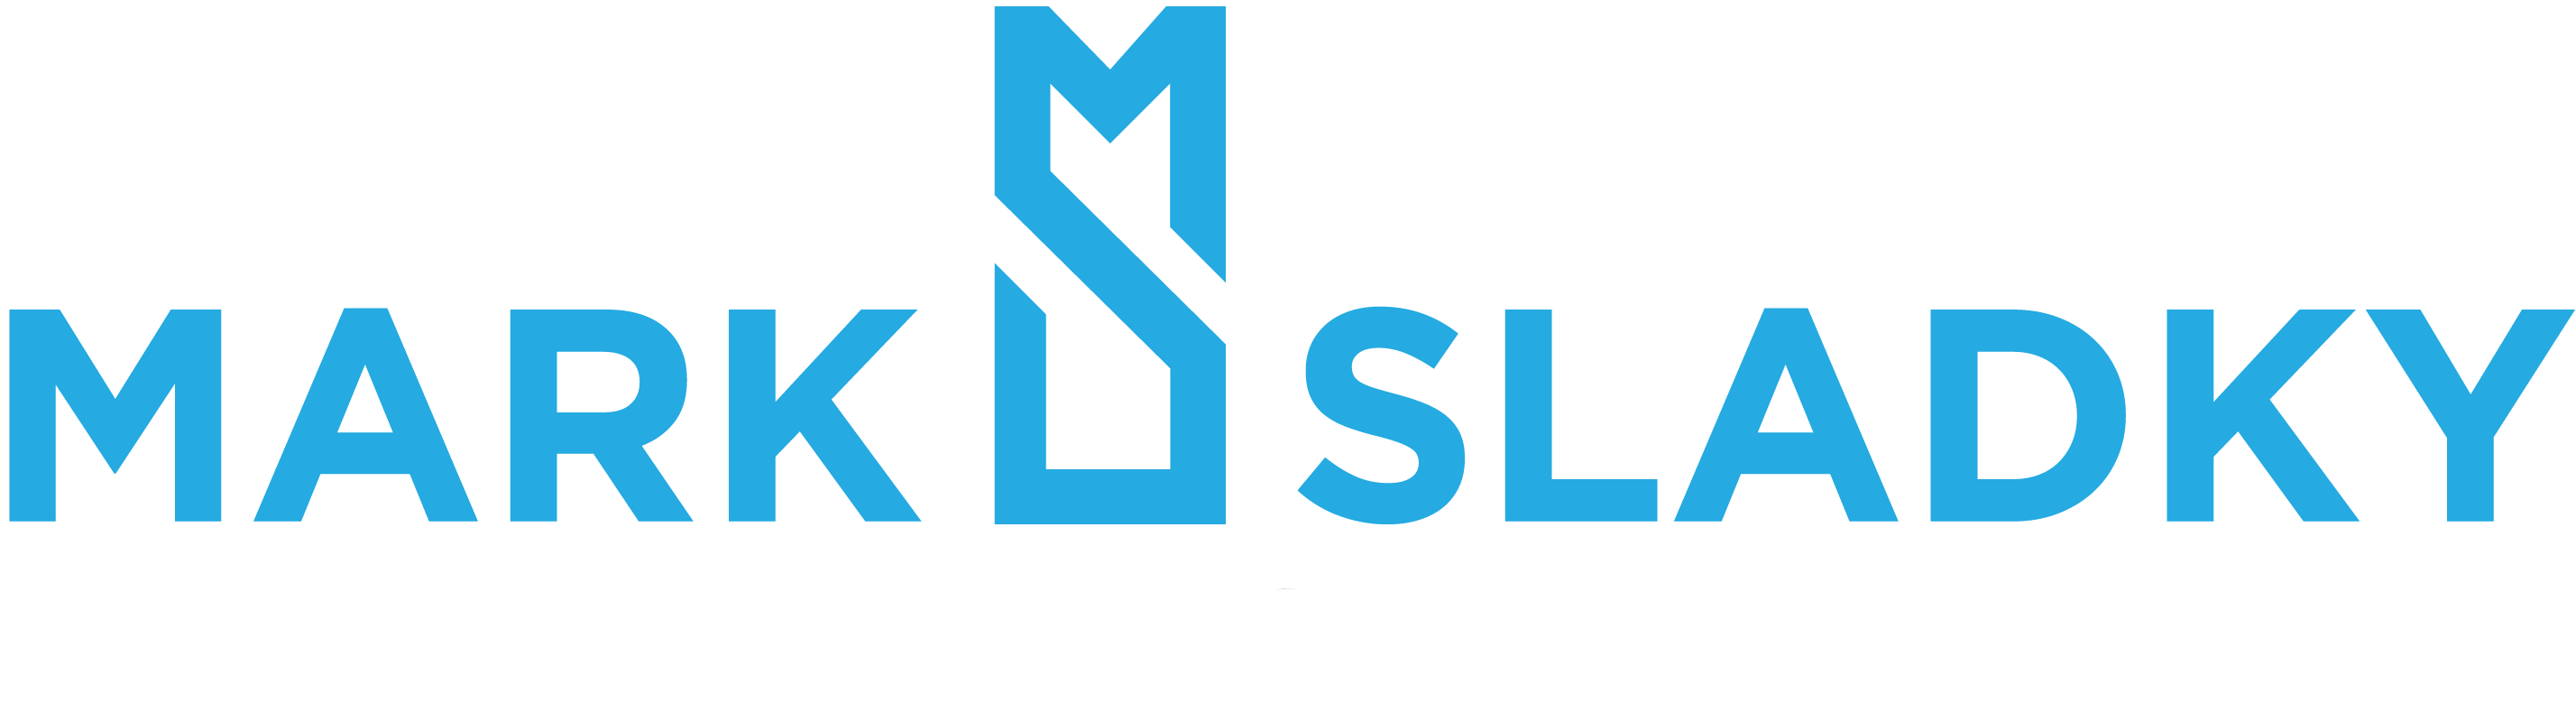 Mark Sladky - Real Estate